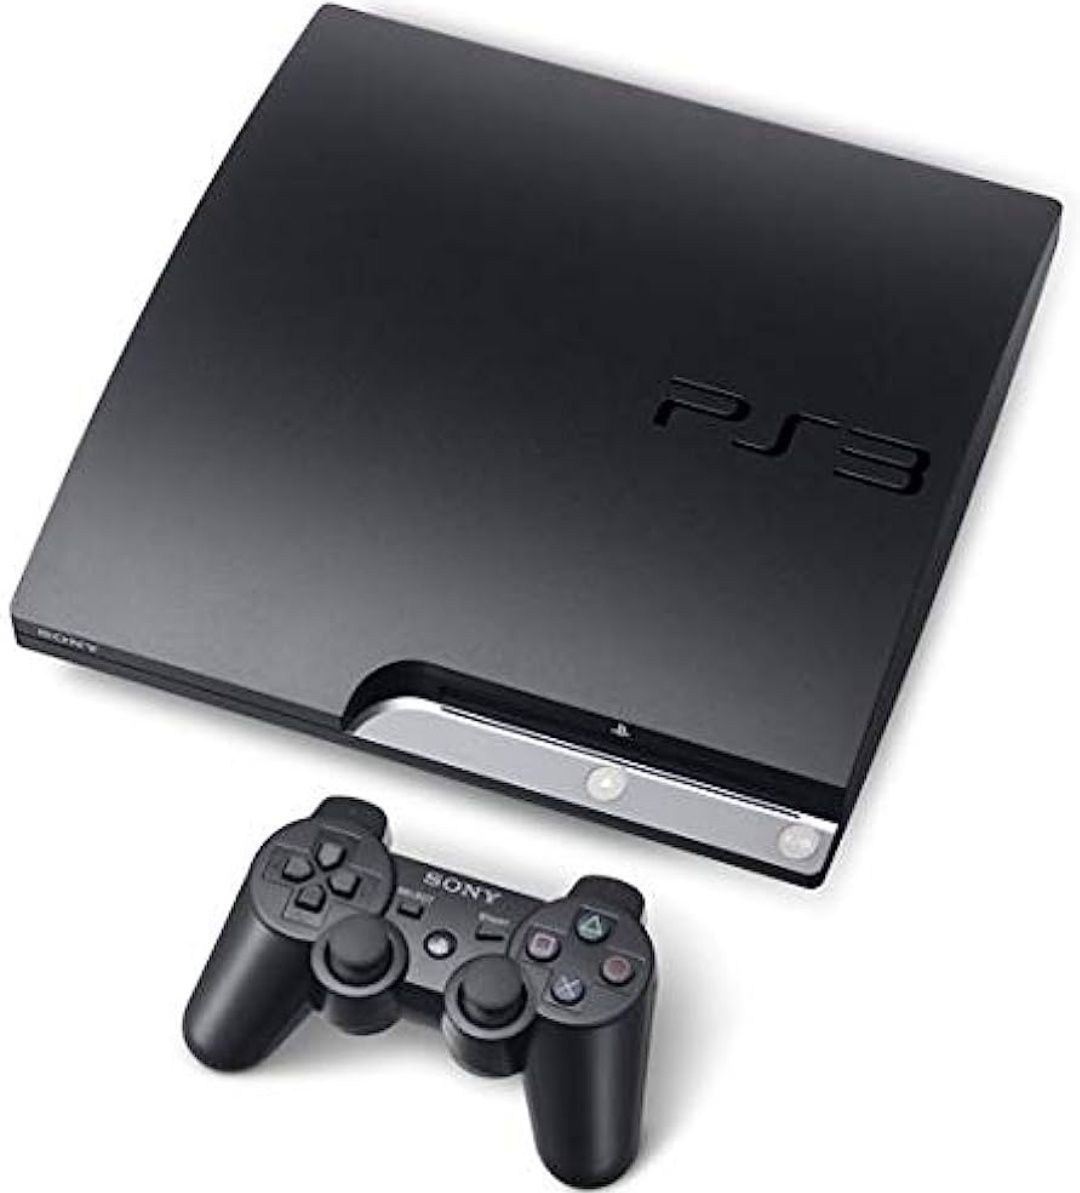 Playstation 3 320gb slim black